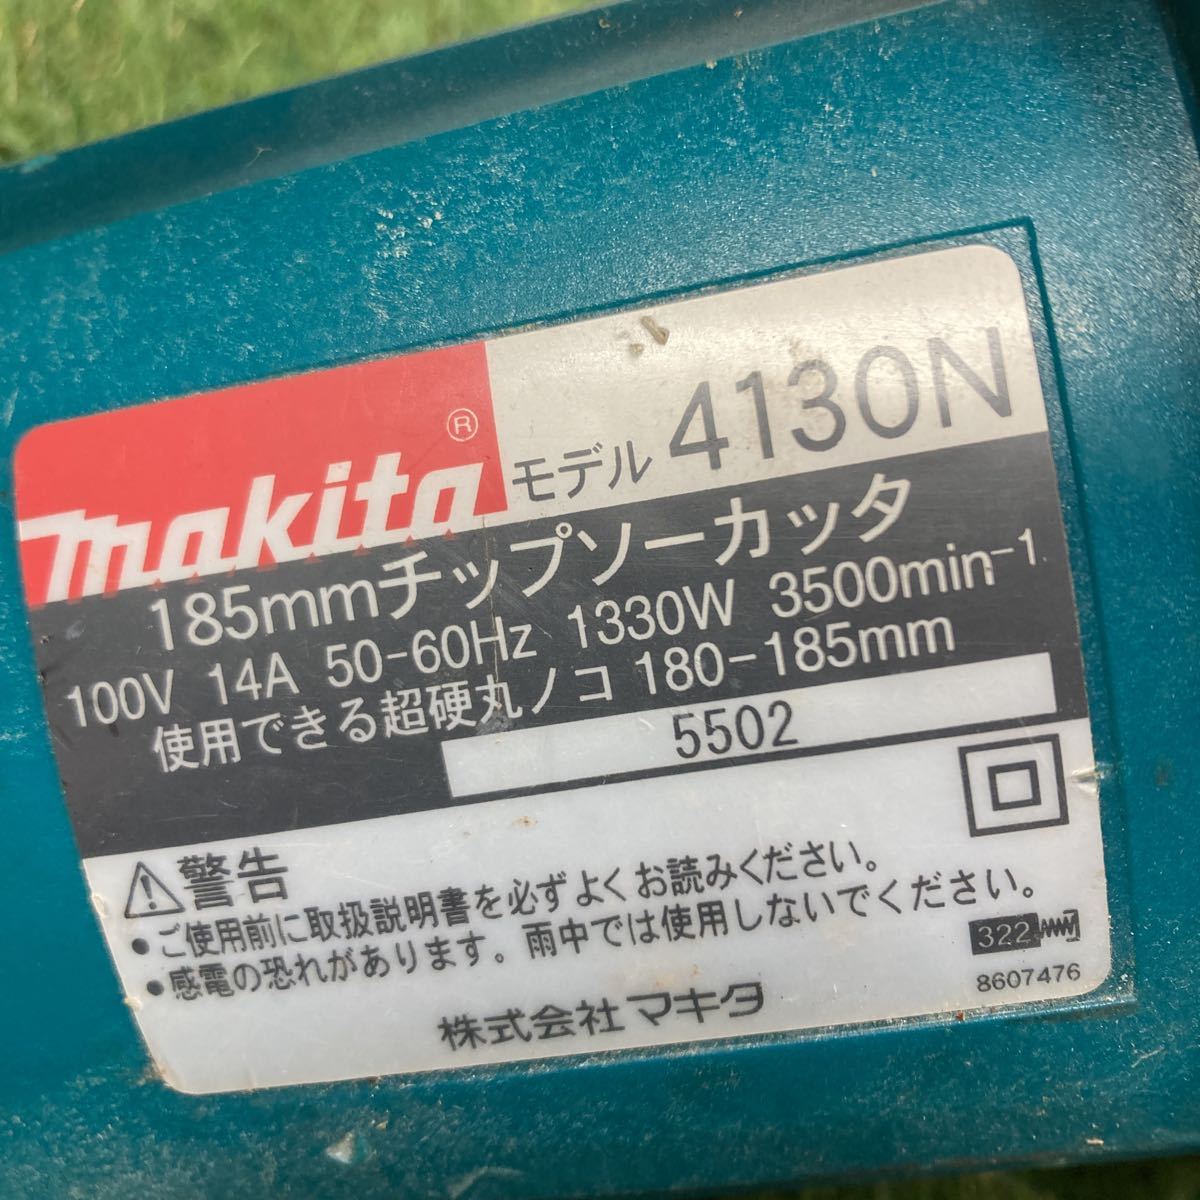 マキタ makita 185mm チップソーカッタ ブレーキ付 4130N 領収書 1758_画像4